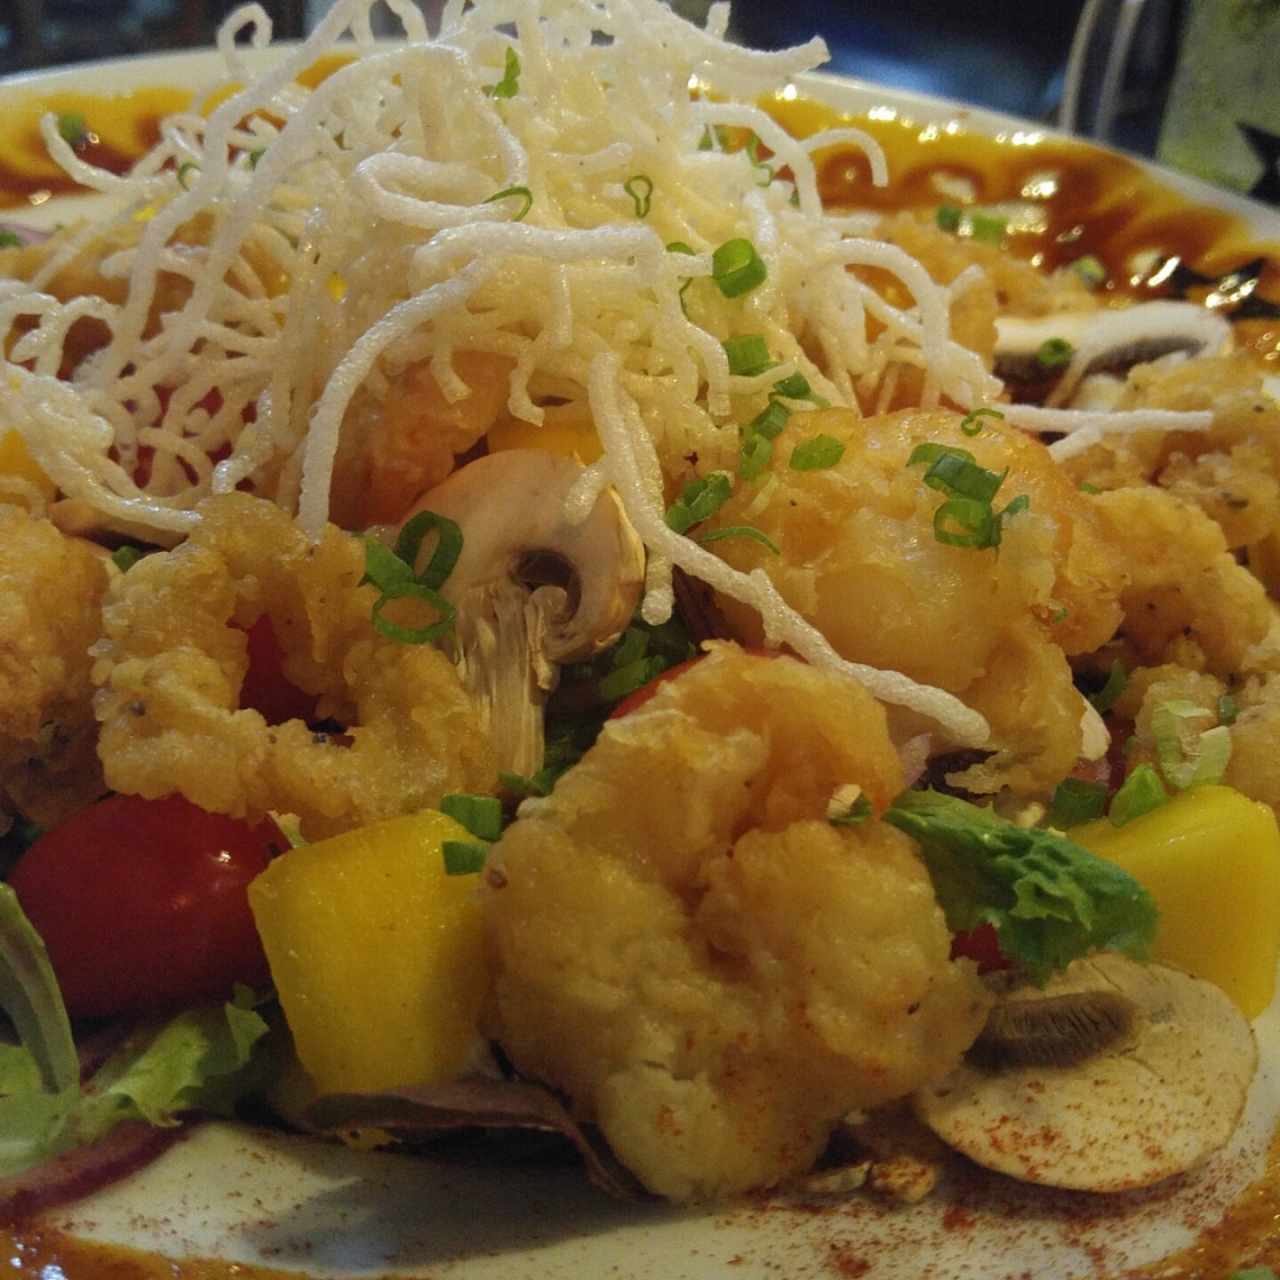 Frescas ensaladas - Ensalada vietnamita